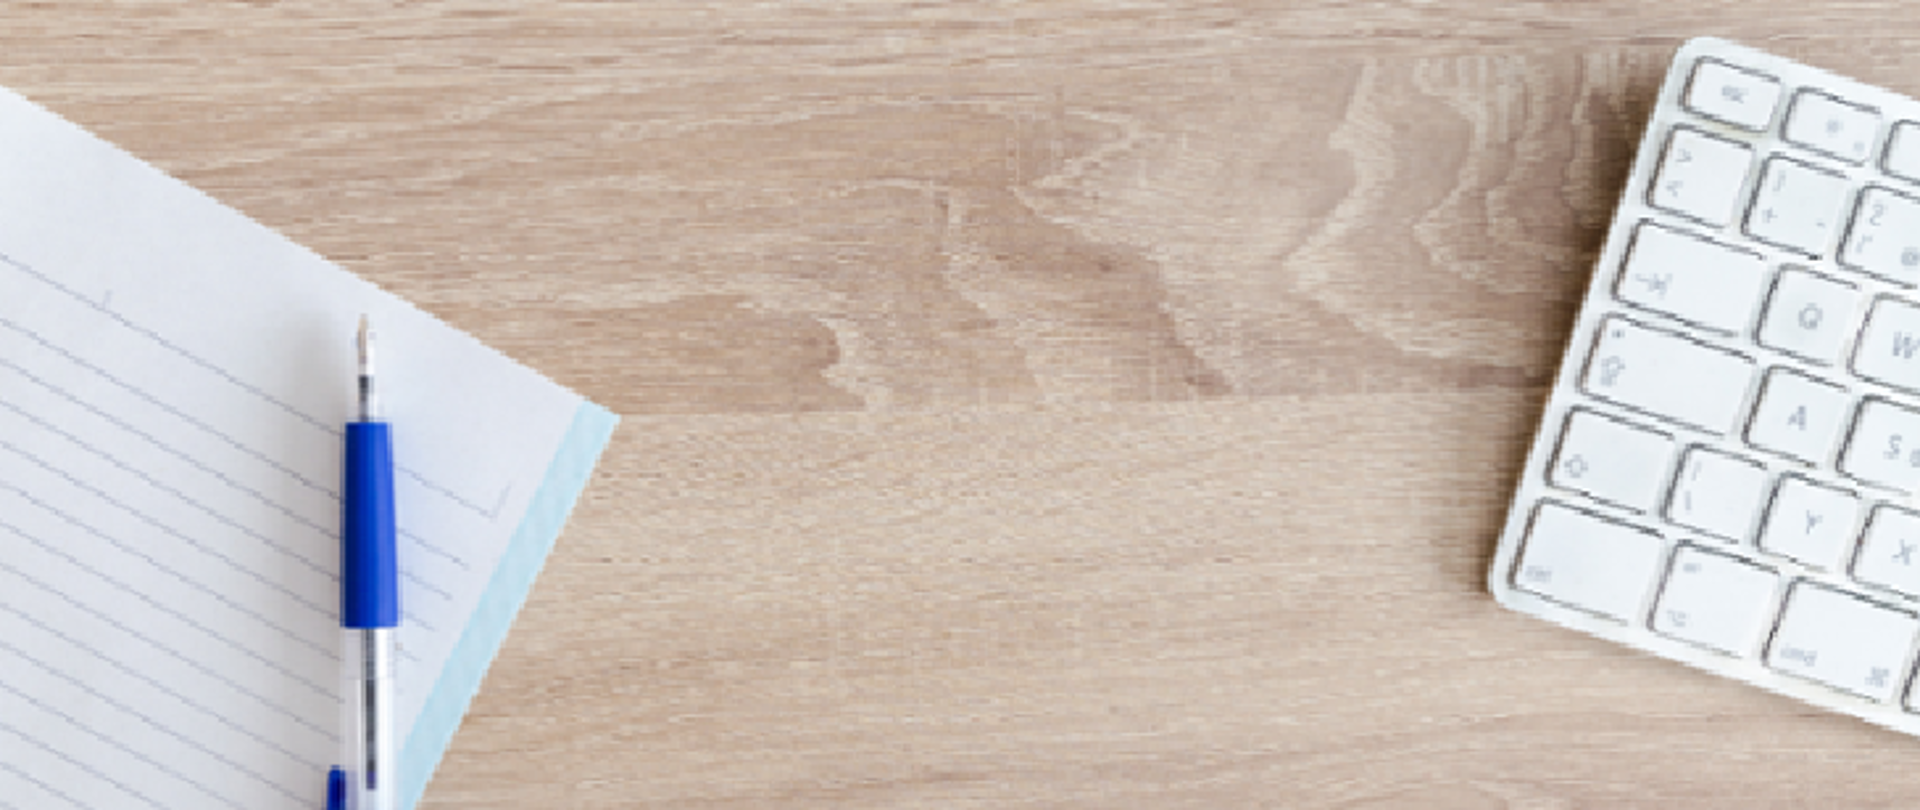 Zdjęcie przedstawia klawiaturę oraz kartkę z papierem położone na biurku